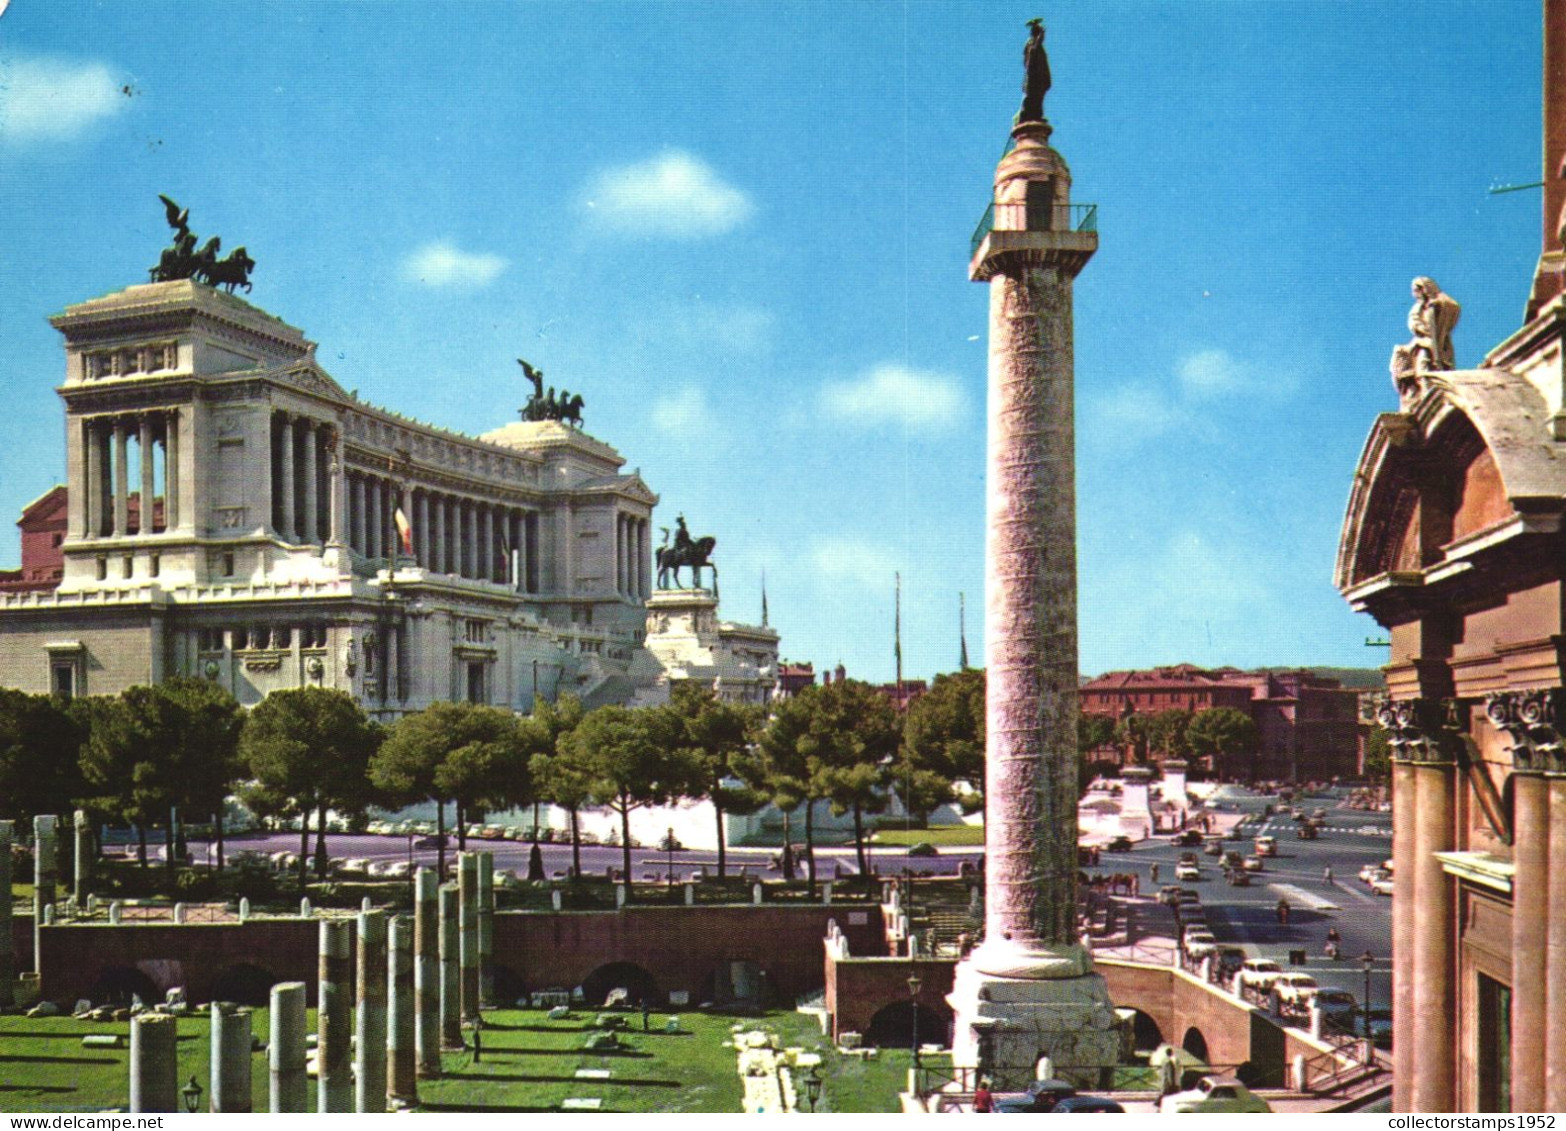 ROME, LAZIO, ALTAR OF THE NATION, MONUMENT, STATUE, CARS, ARCHITECTURE, ITALY, POSTCARD - Altare Della Patria